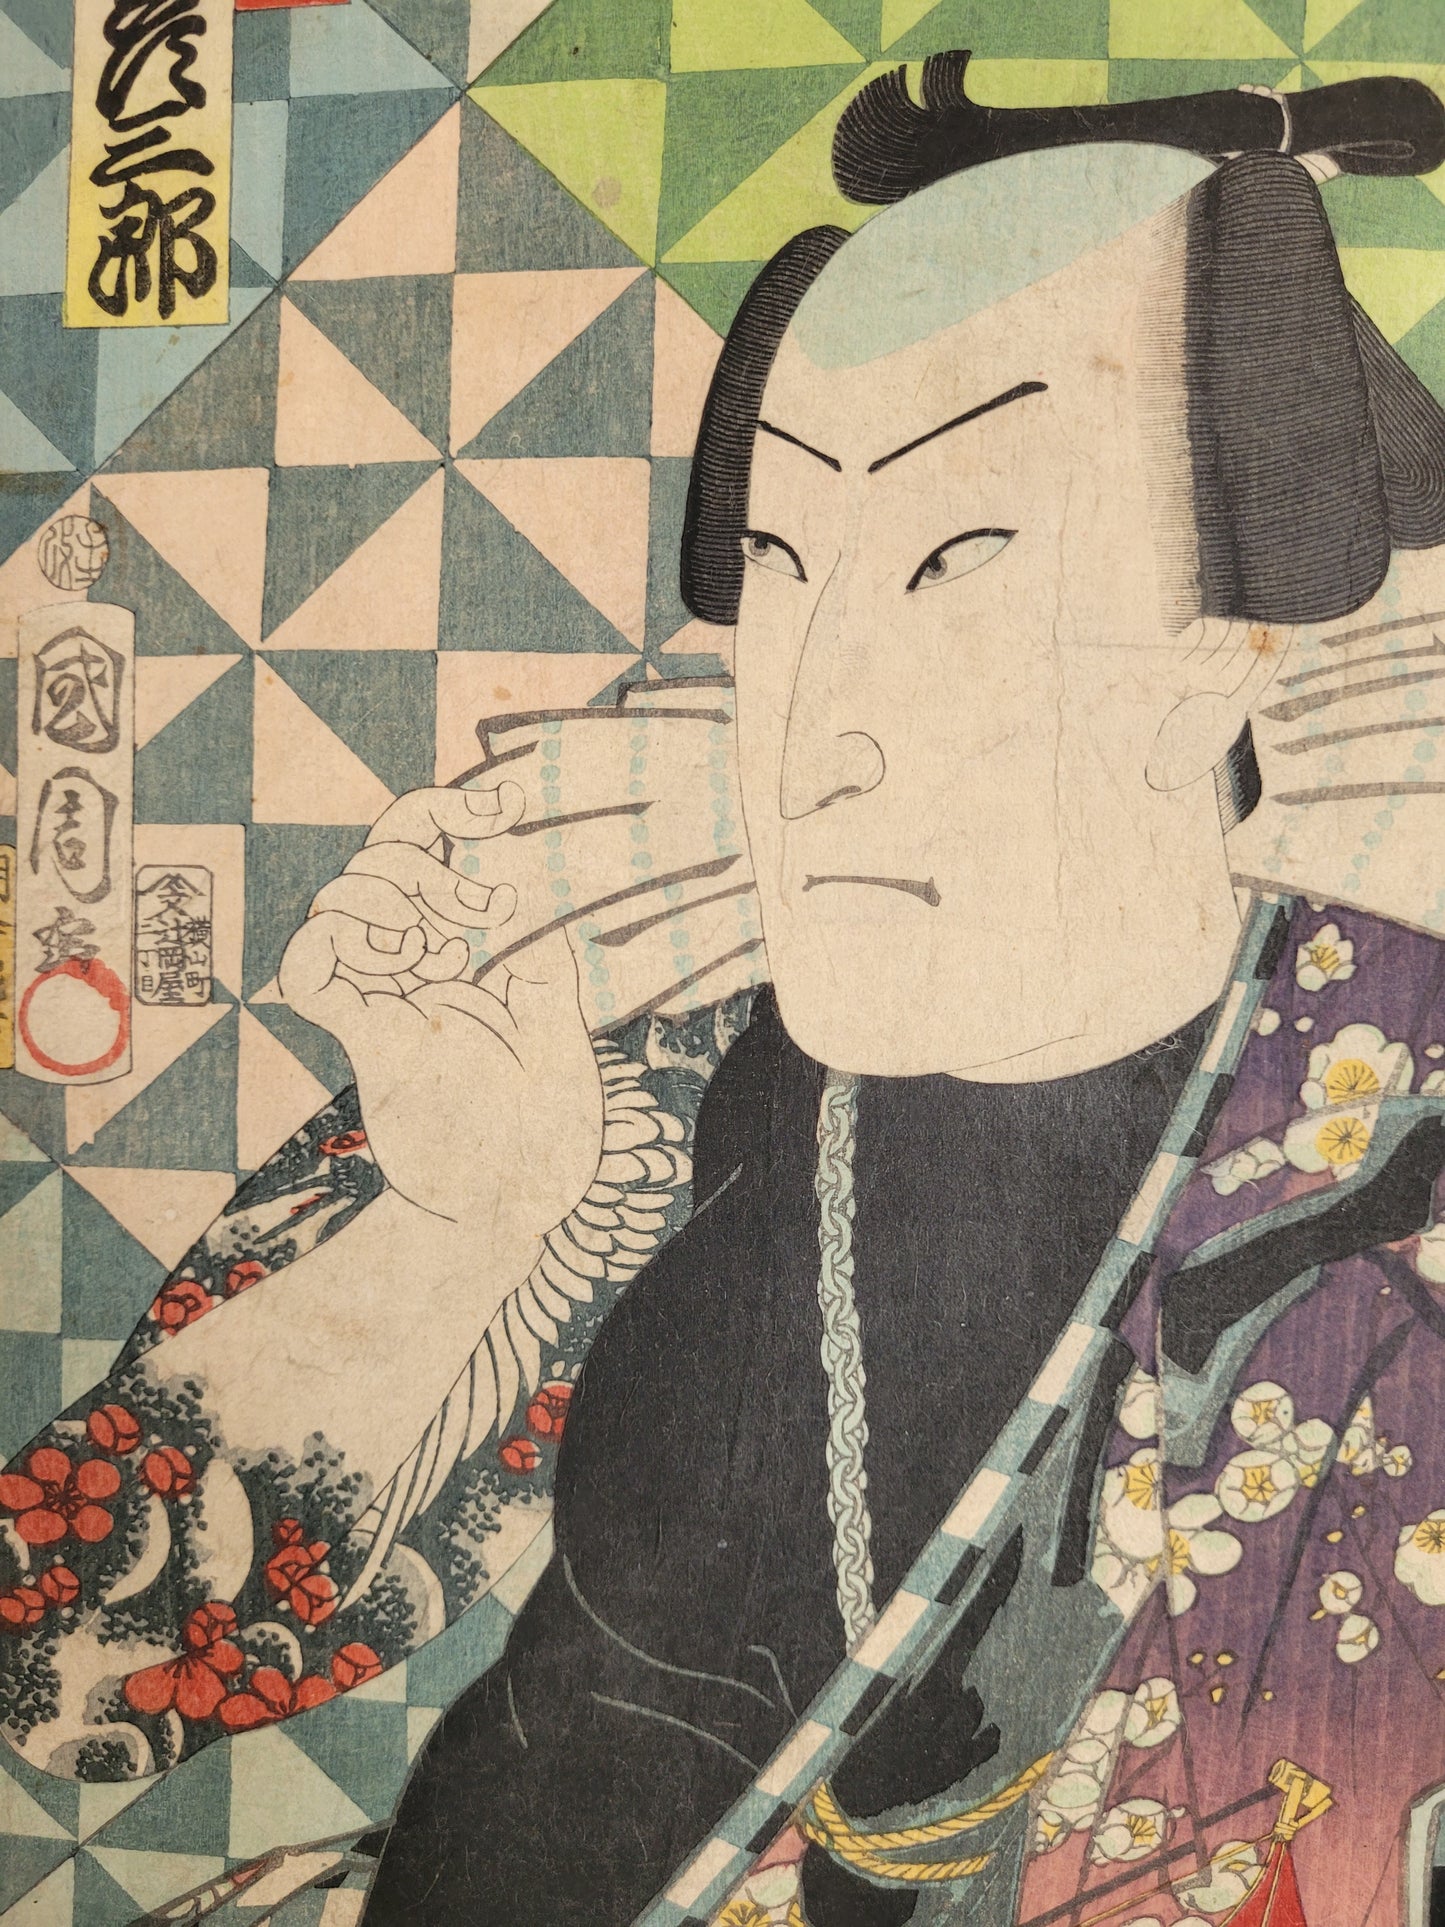 Toyohara Kunichika (1835-1900) Original Blockdruck Printed 1864